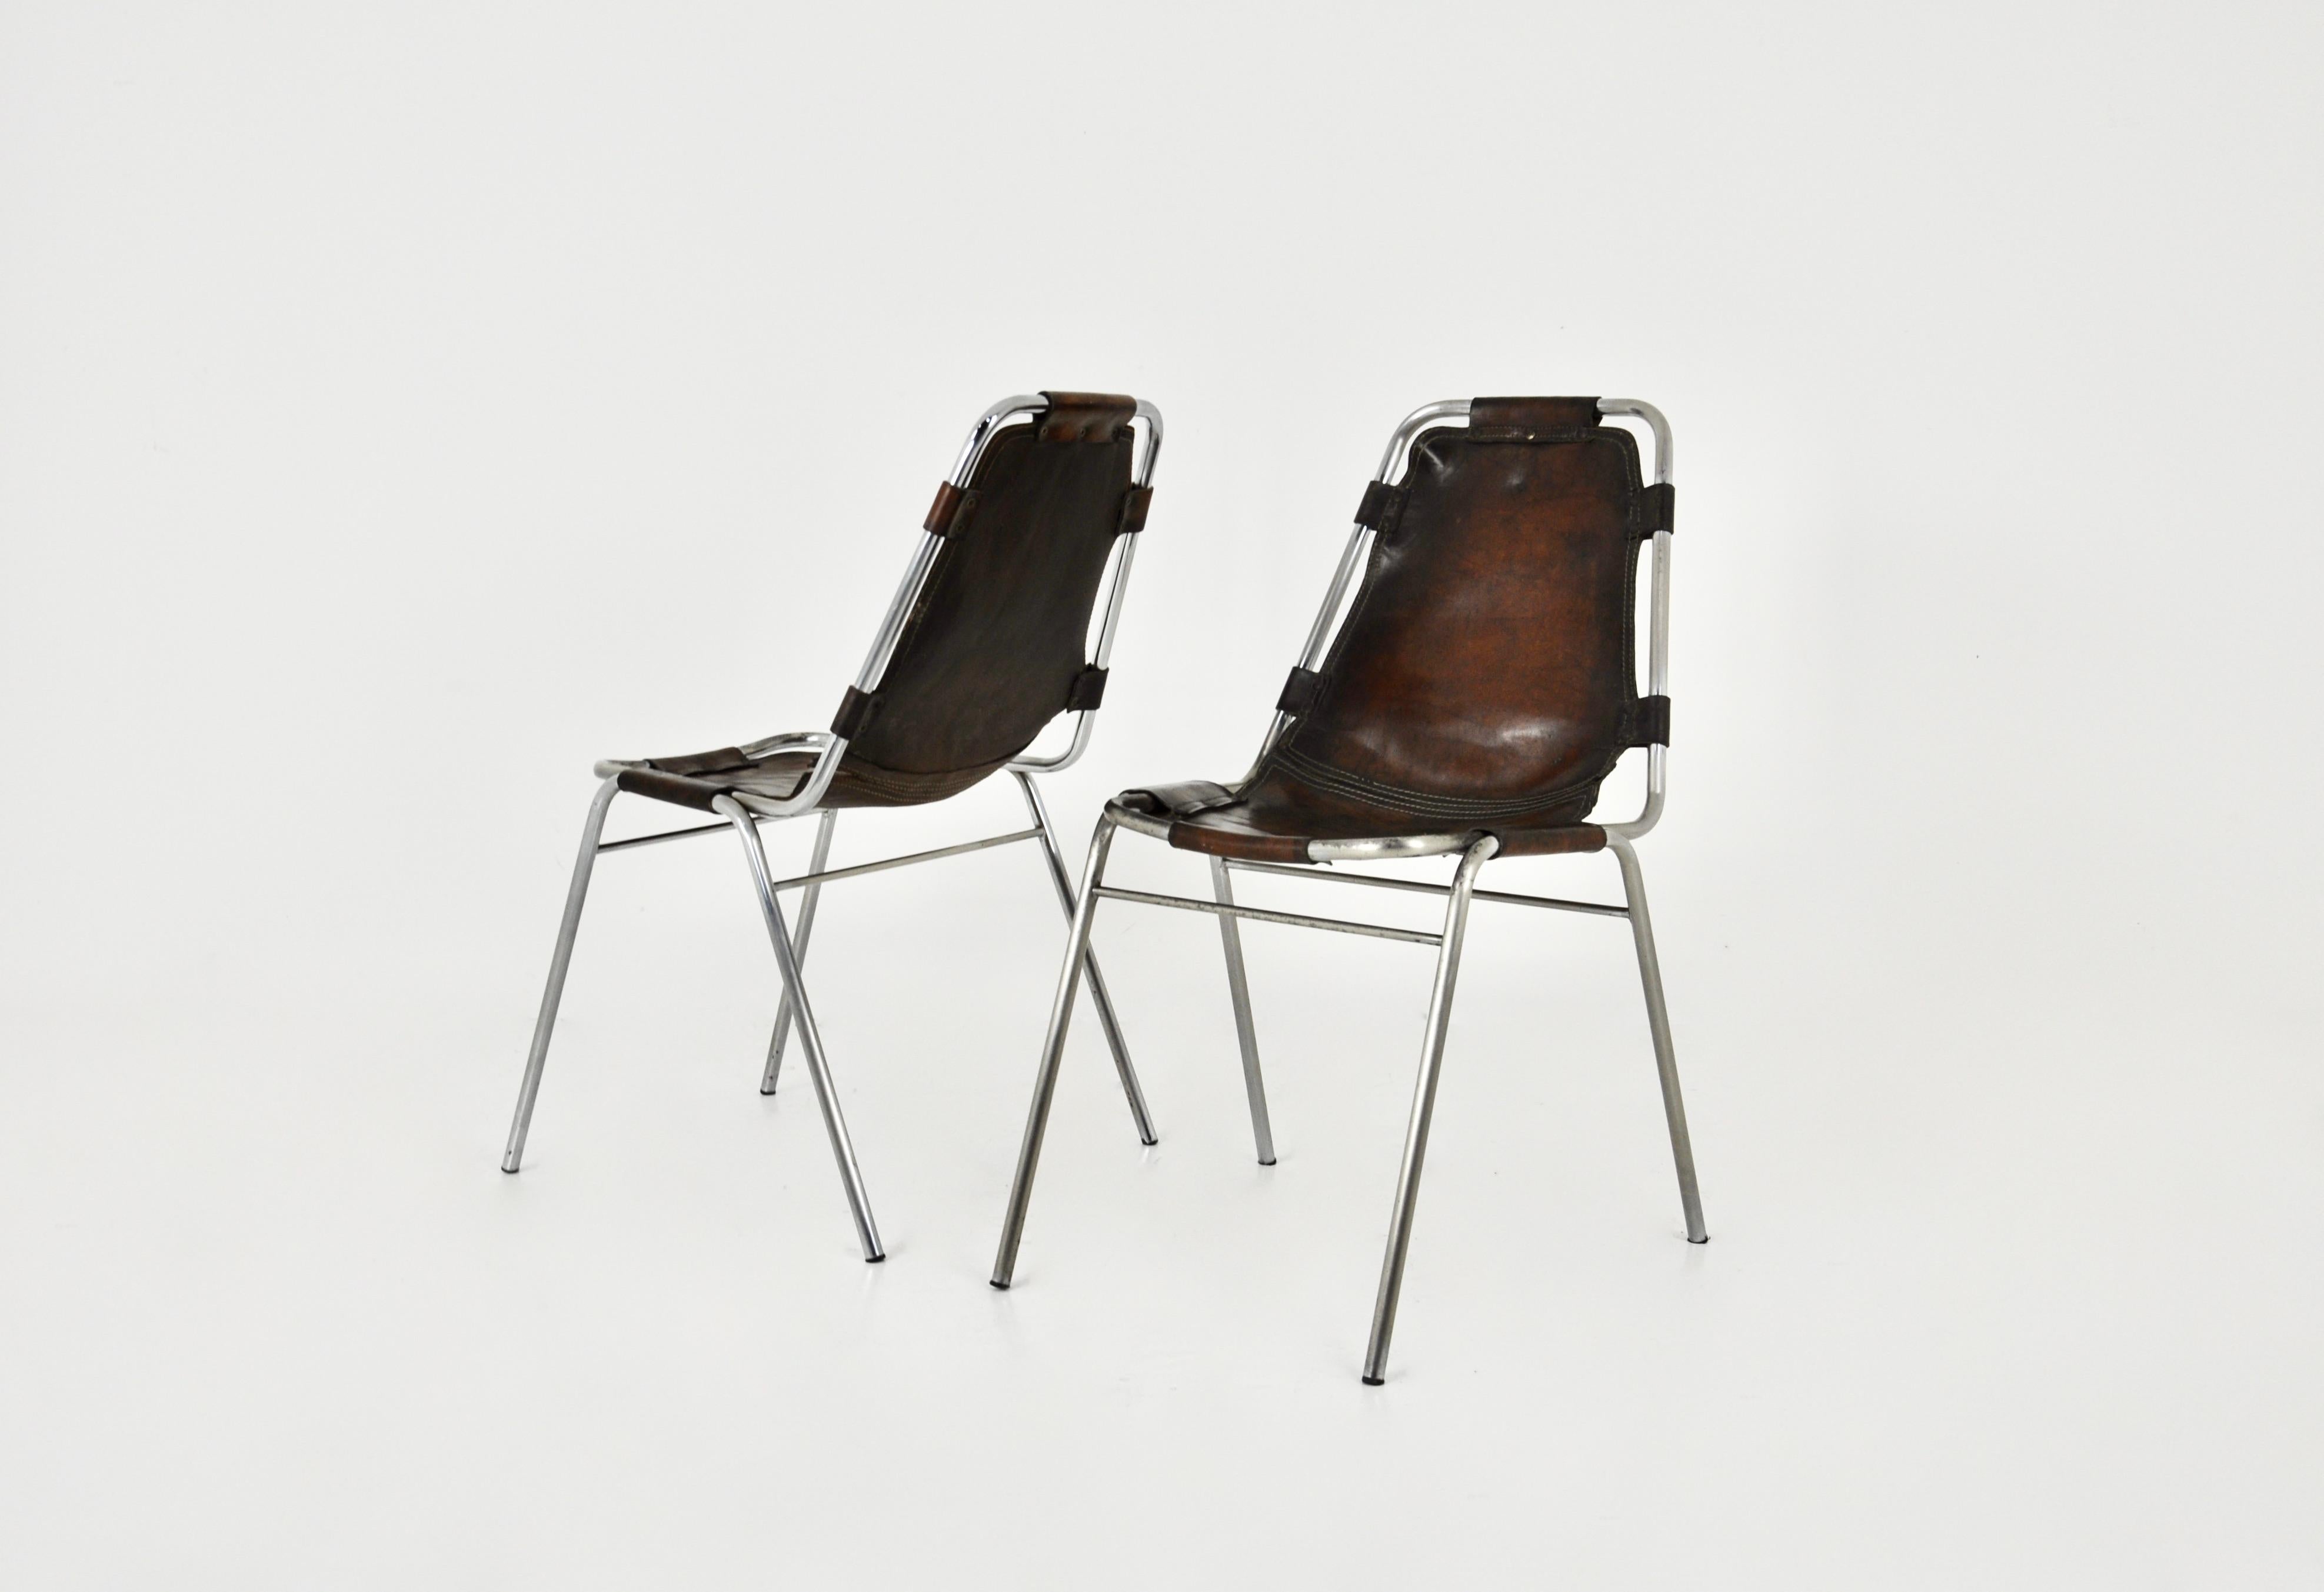 Ensemble de 2 chaises en cuir et métal chromé. Ce modèle a été conçu par Charlotte Perriand pour la station de ski française des Arcs dans les années 1960. Hauteur du siège : 43 cm. Usure due au temps et à l'âge des chaises.